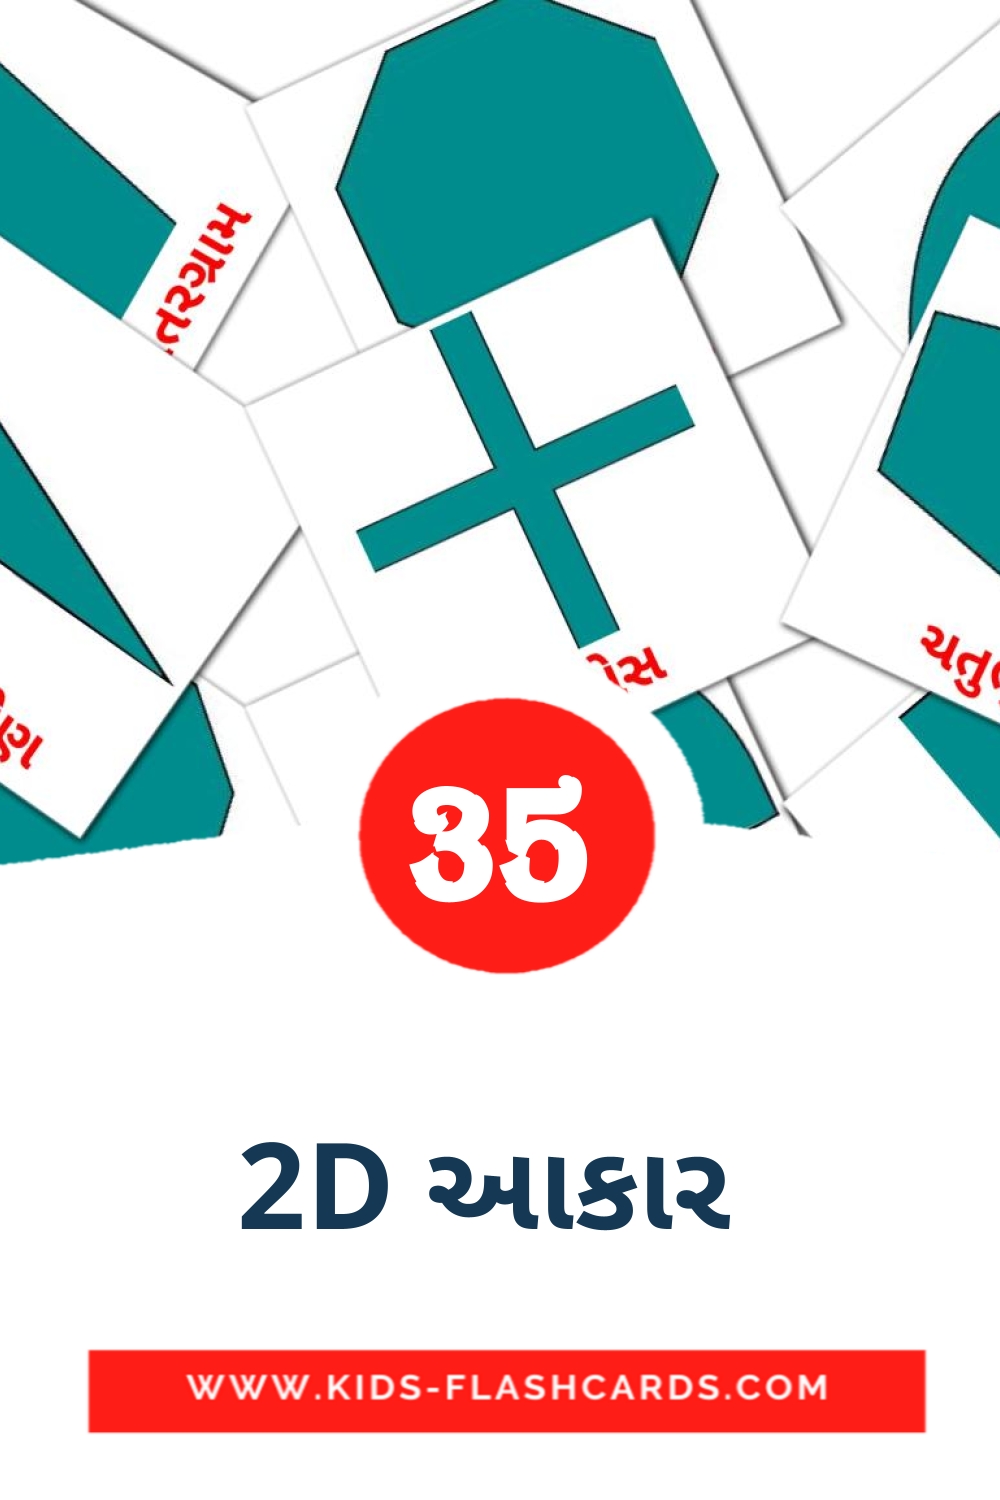 35 tarjetas didacticas de 2D આકાર  para el jardín de infancia en gujarati